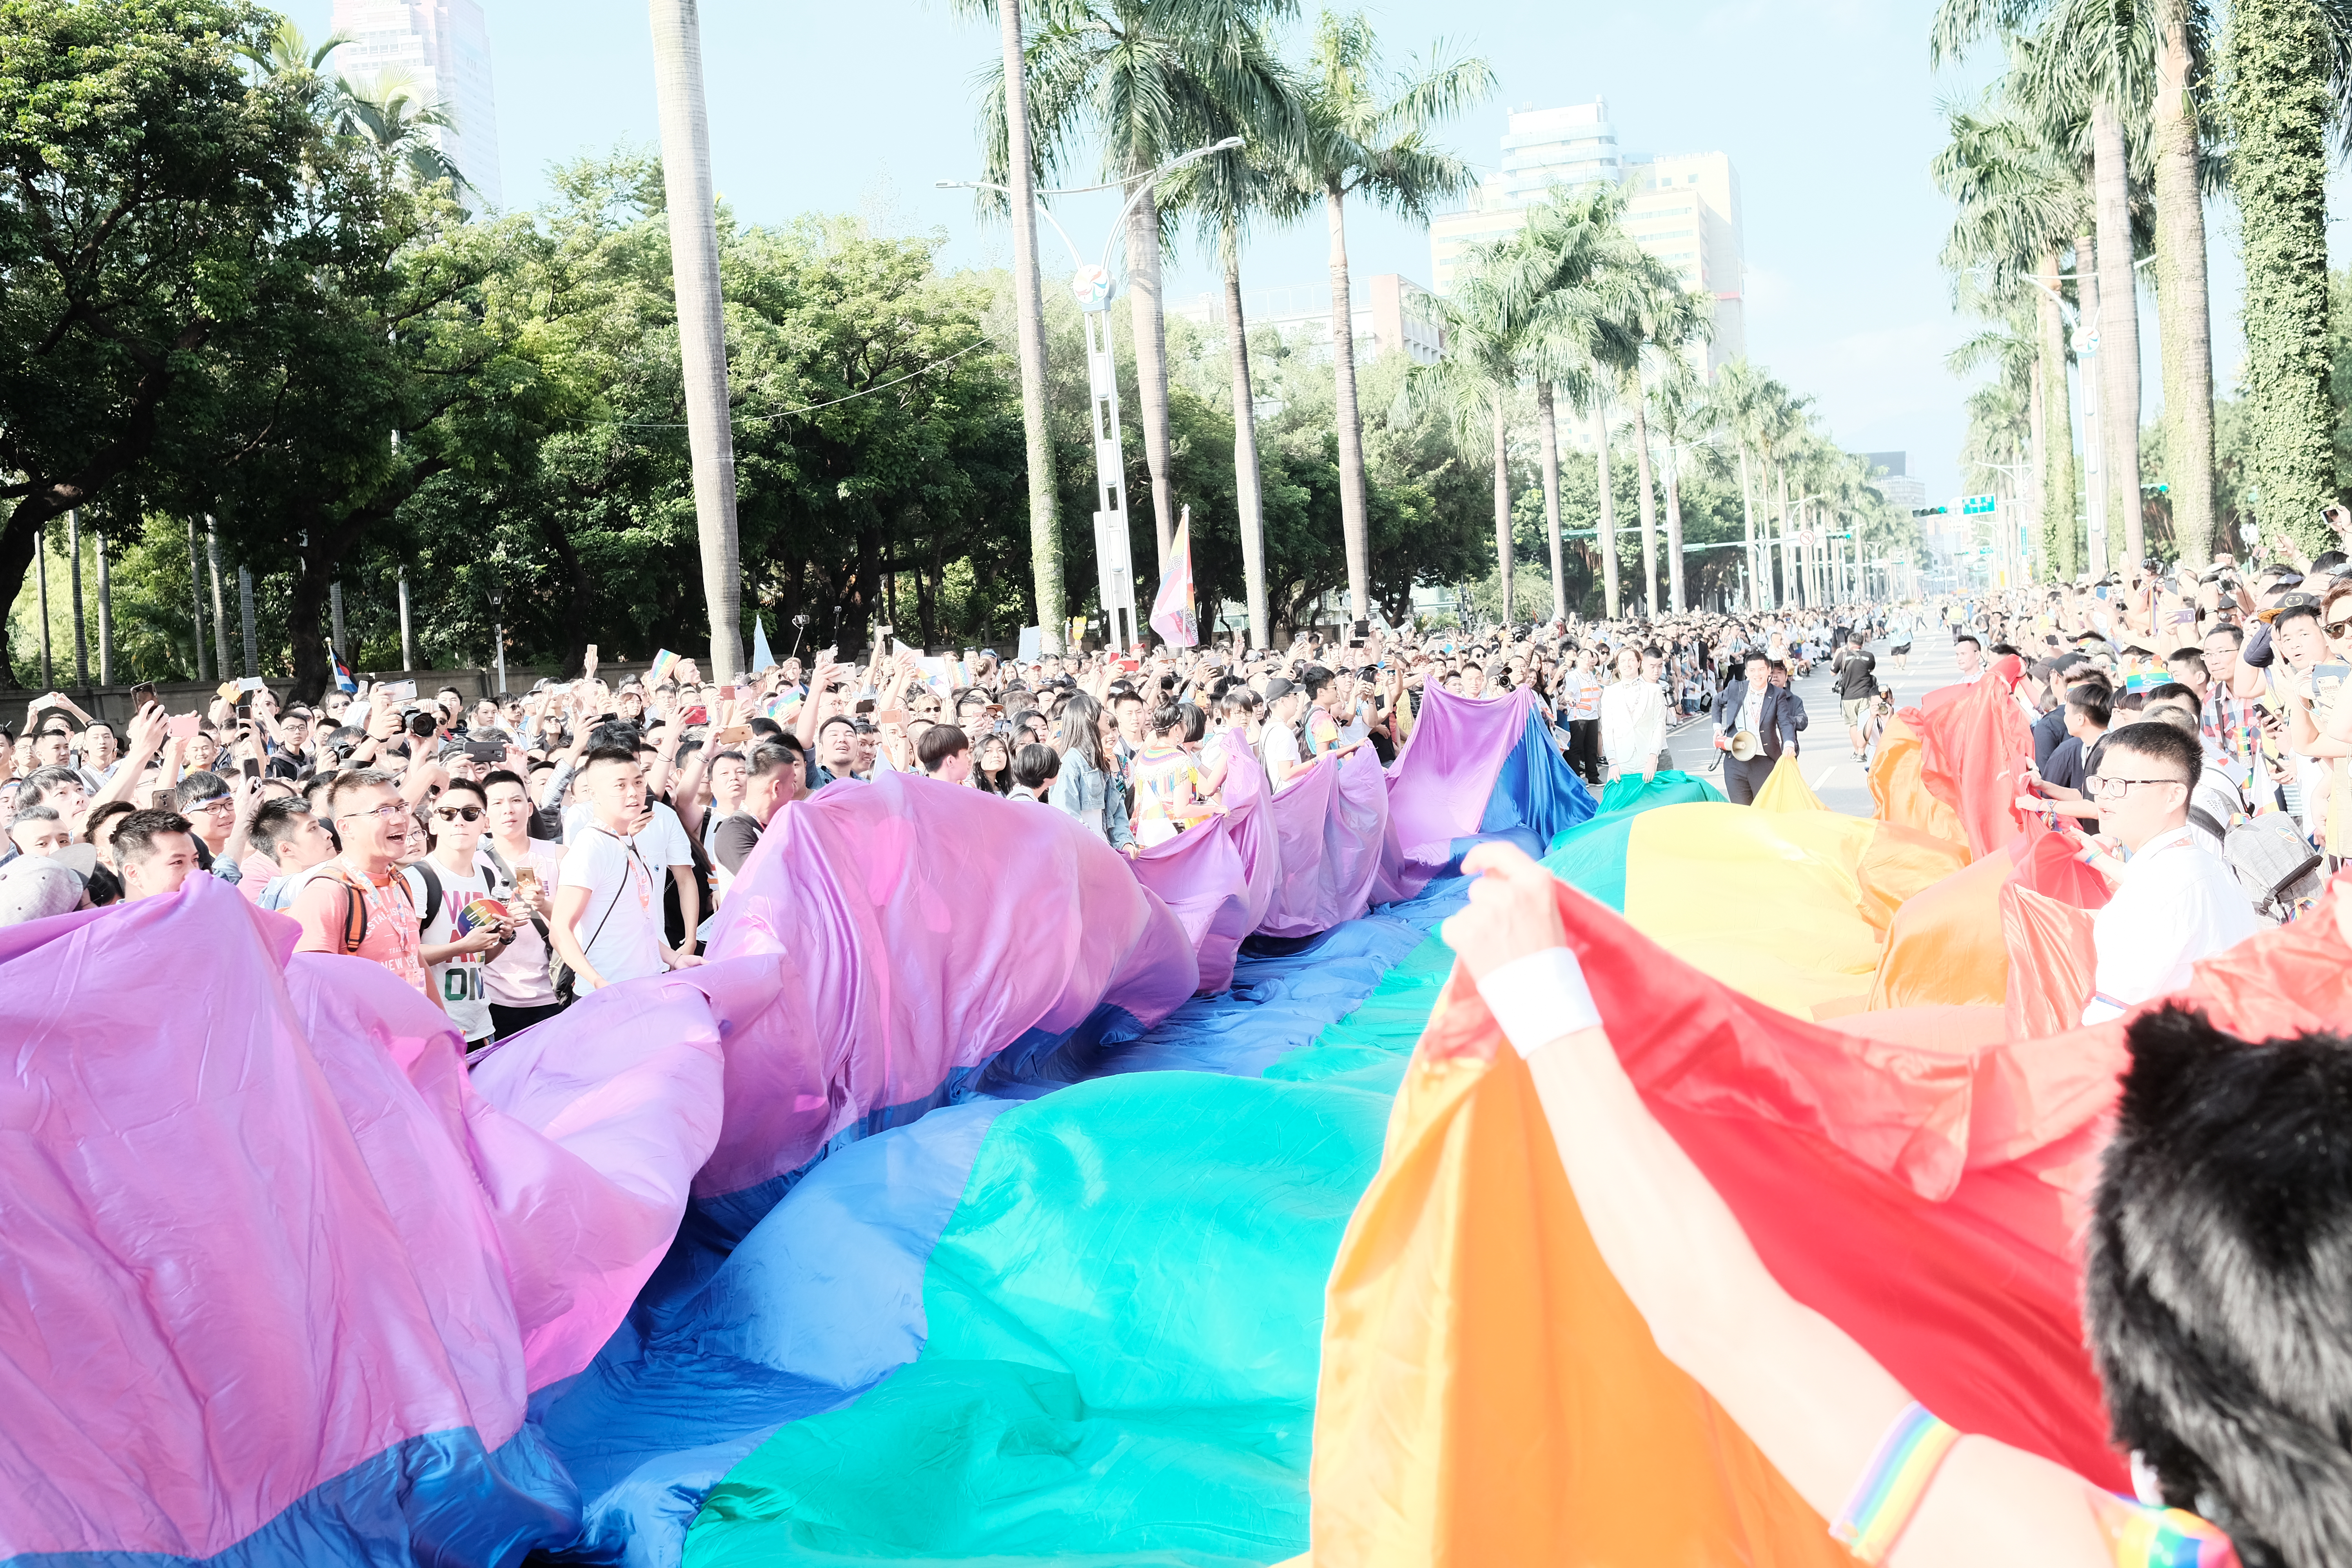 民眾鋪上彩虹旗，引起群眾圍觀、爭相拍照留念。